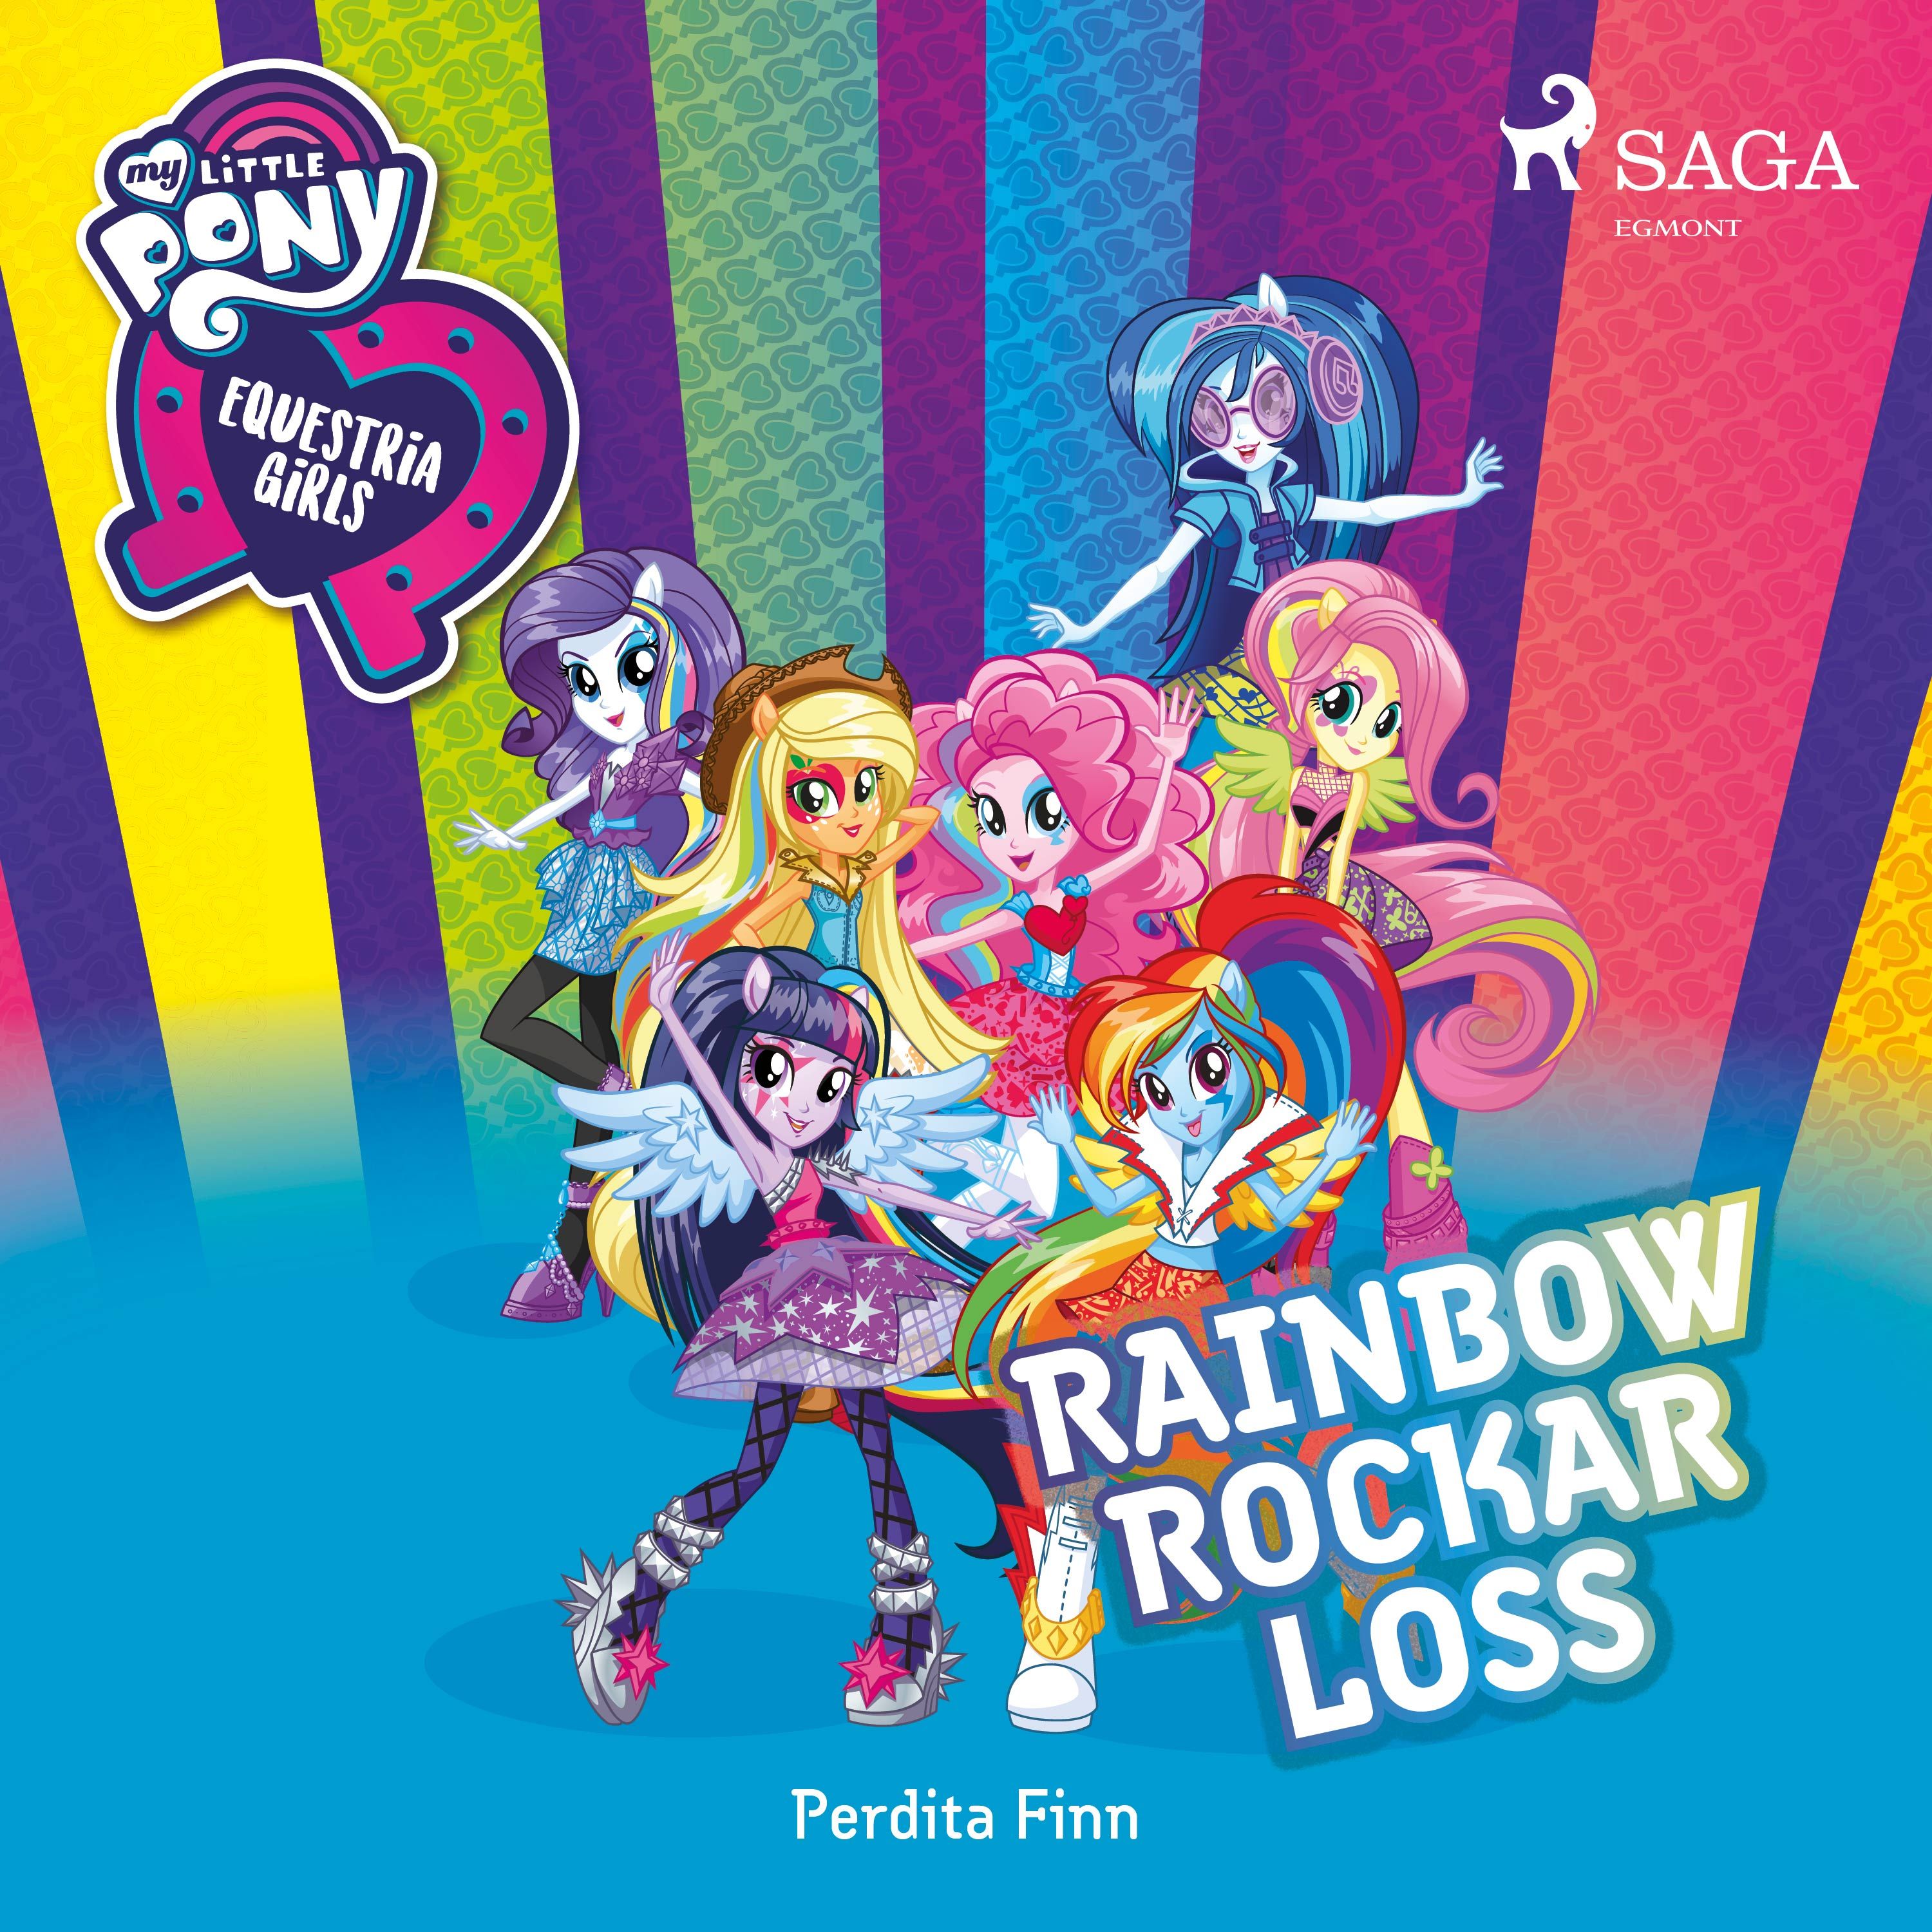 Equestria Girls - Rainbow rockar loss, ljudbok av Perdita Finn